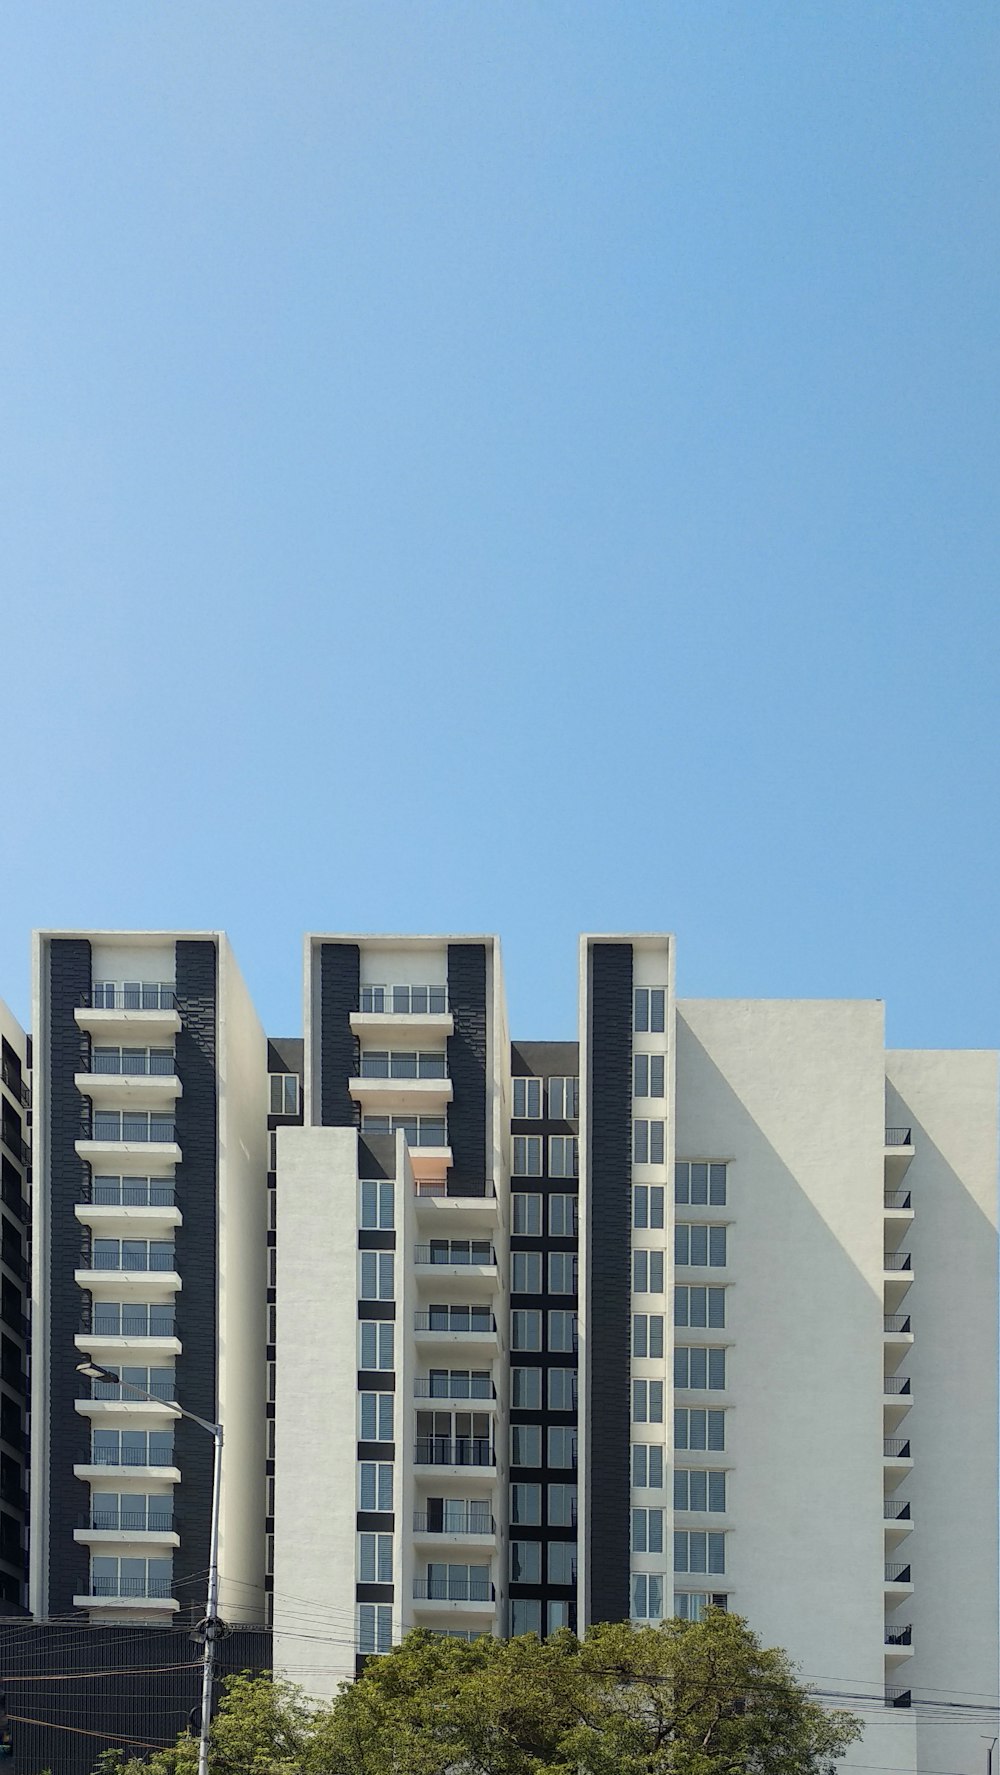 edifício de concreto branco sob céu azul durante o dia